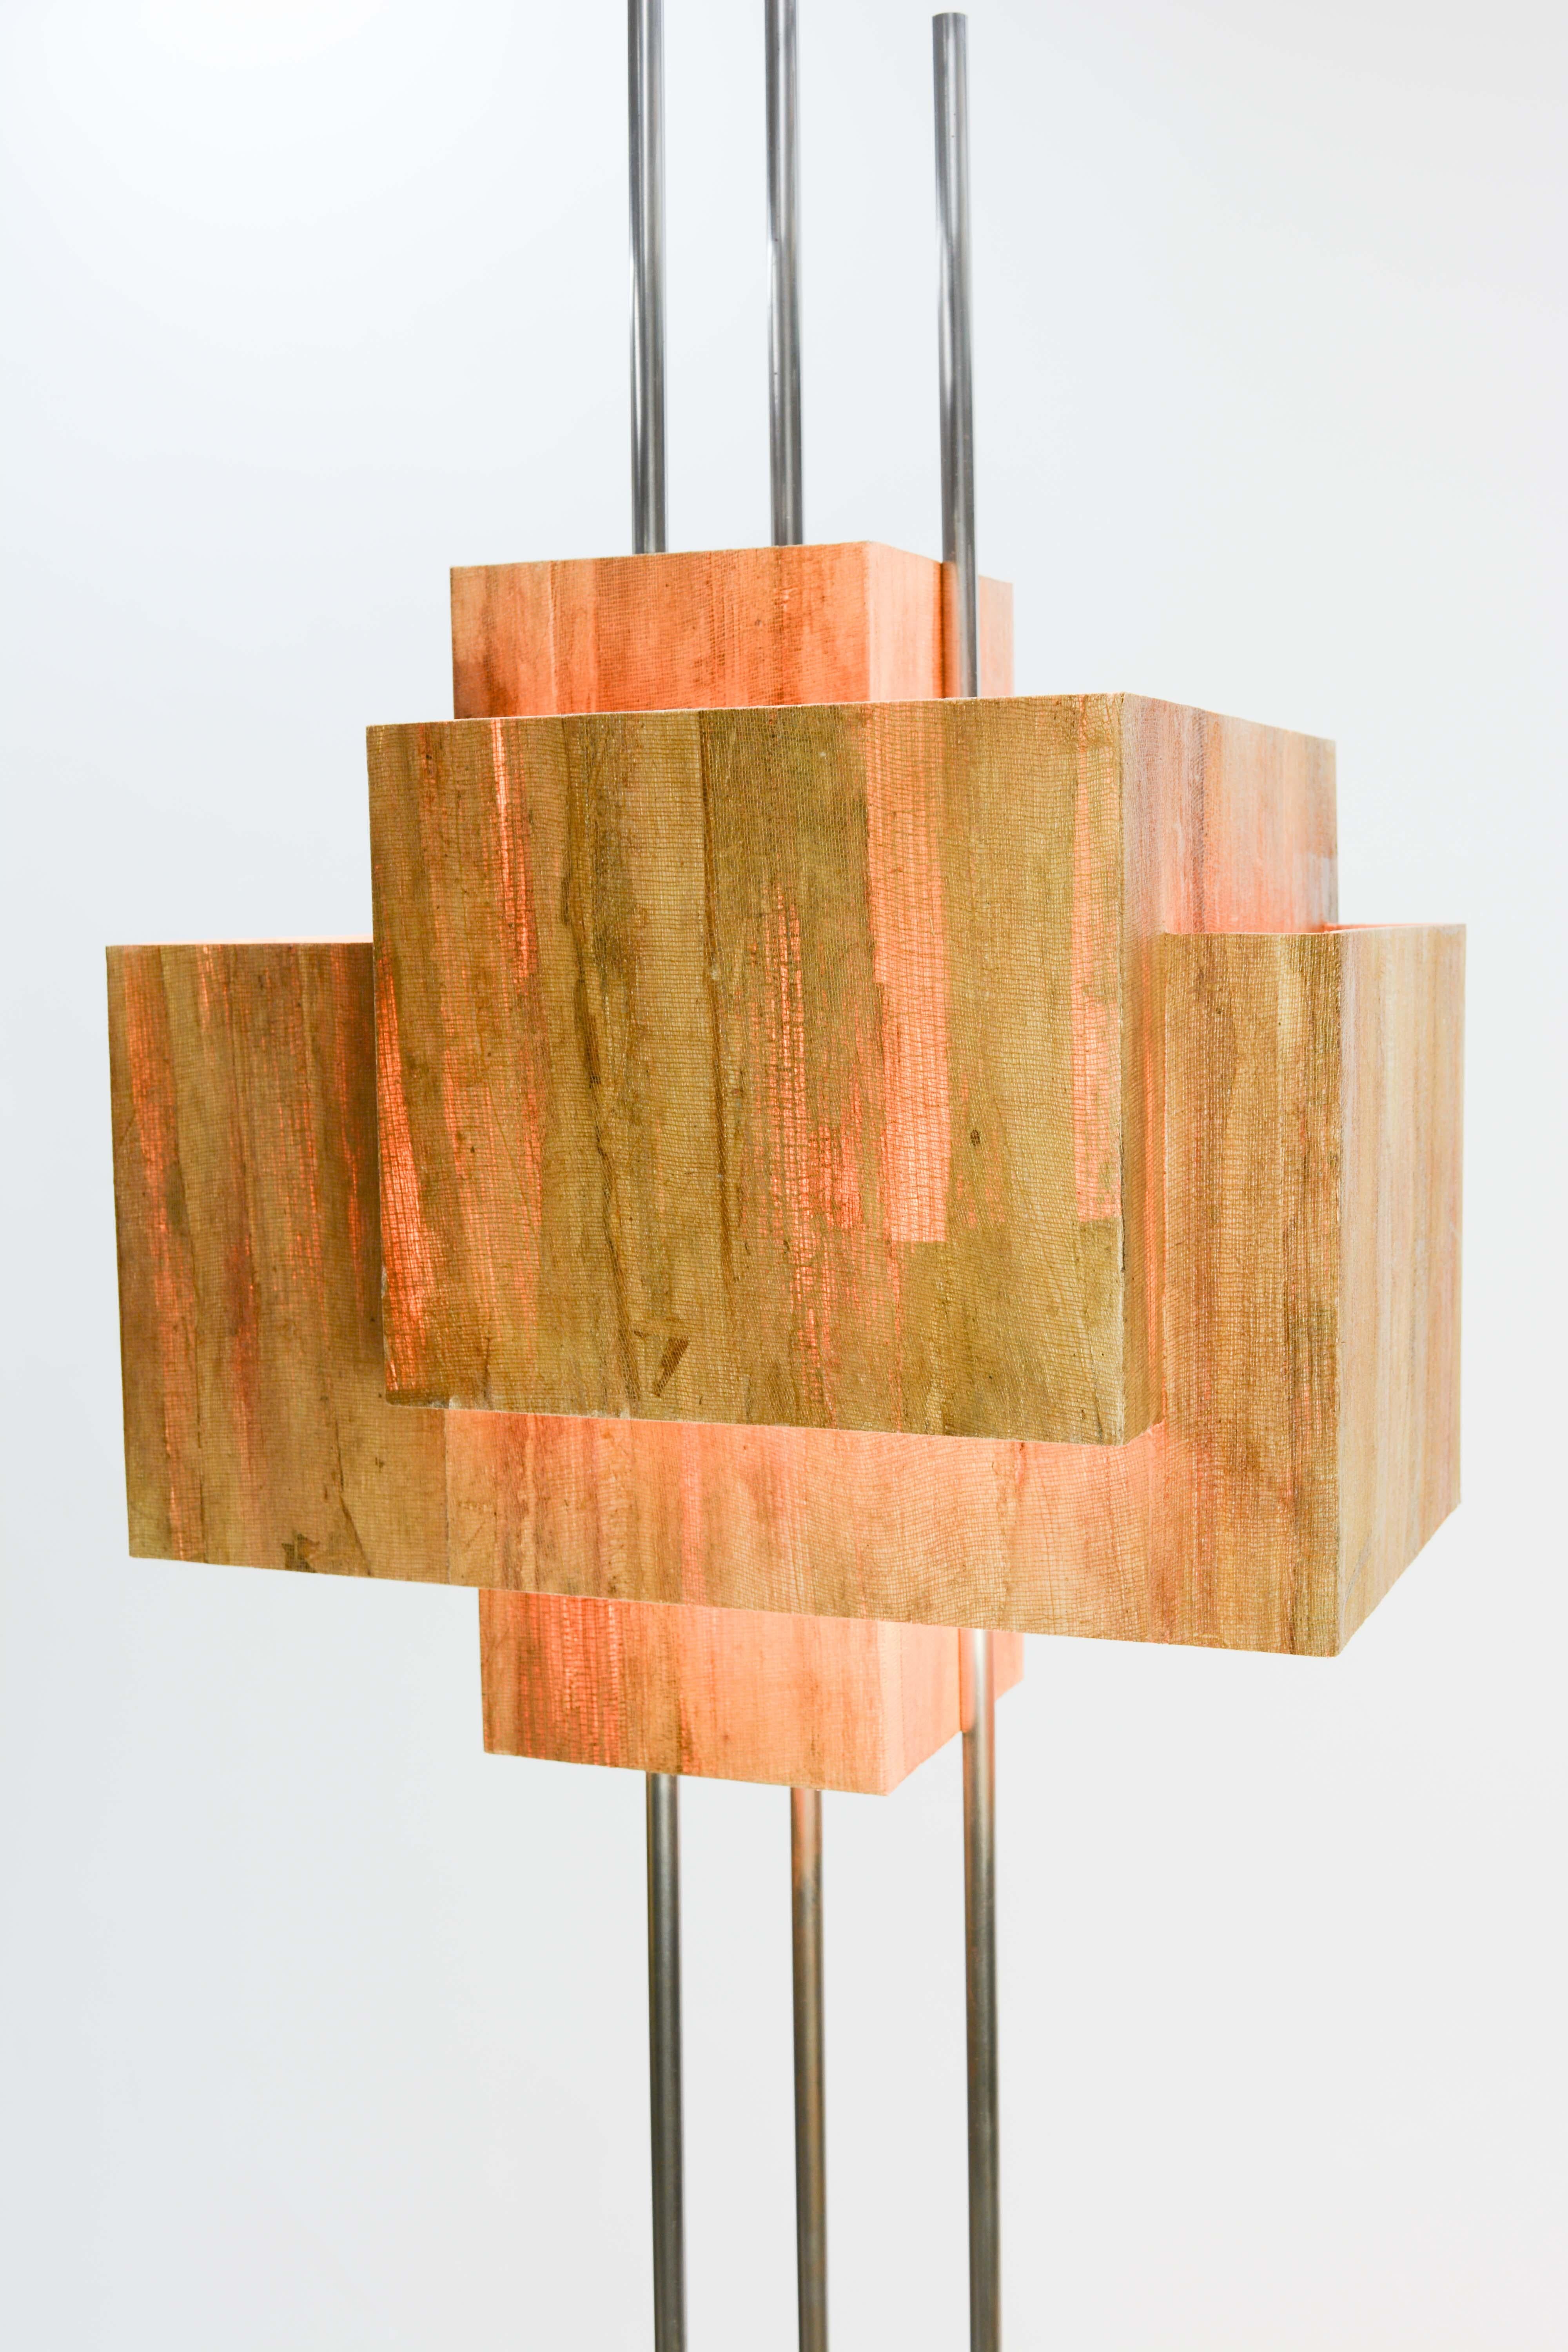 Frank Lloyd Wright Inspired Floor Lamp by Lighting Artisan Jamie Voilette For Sale 2